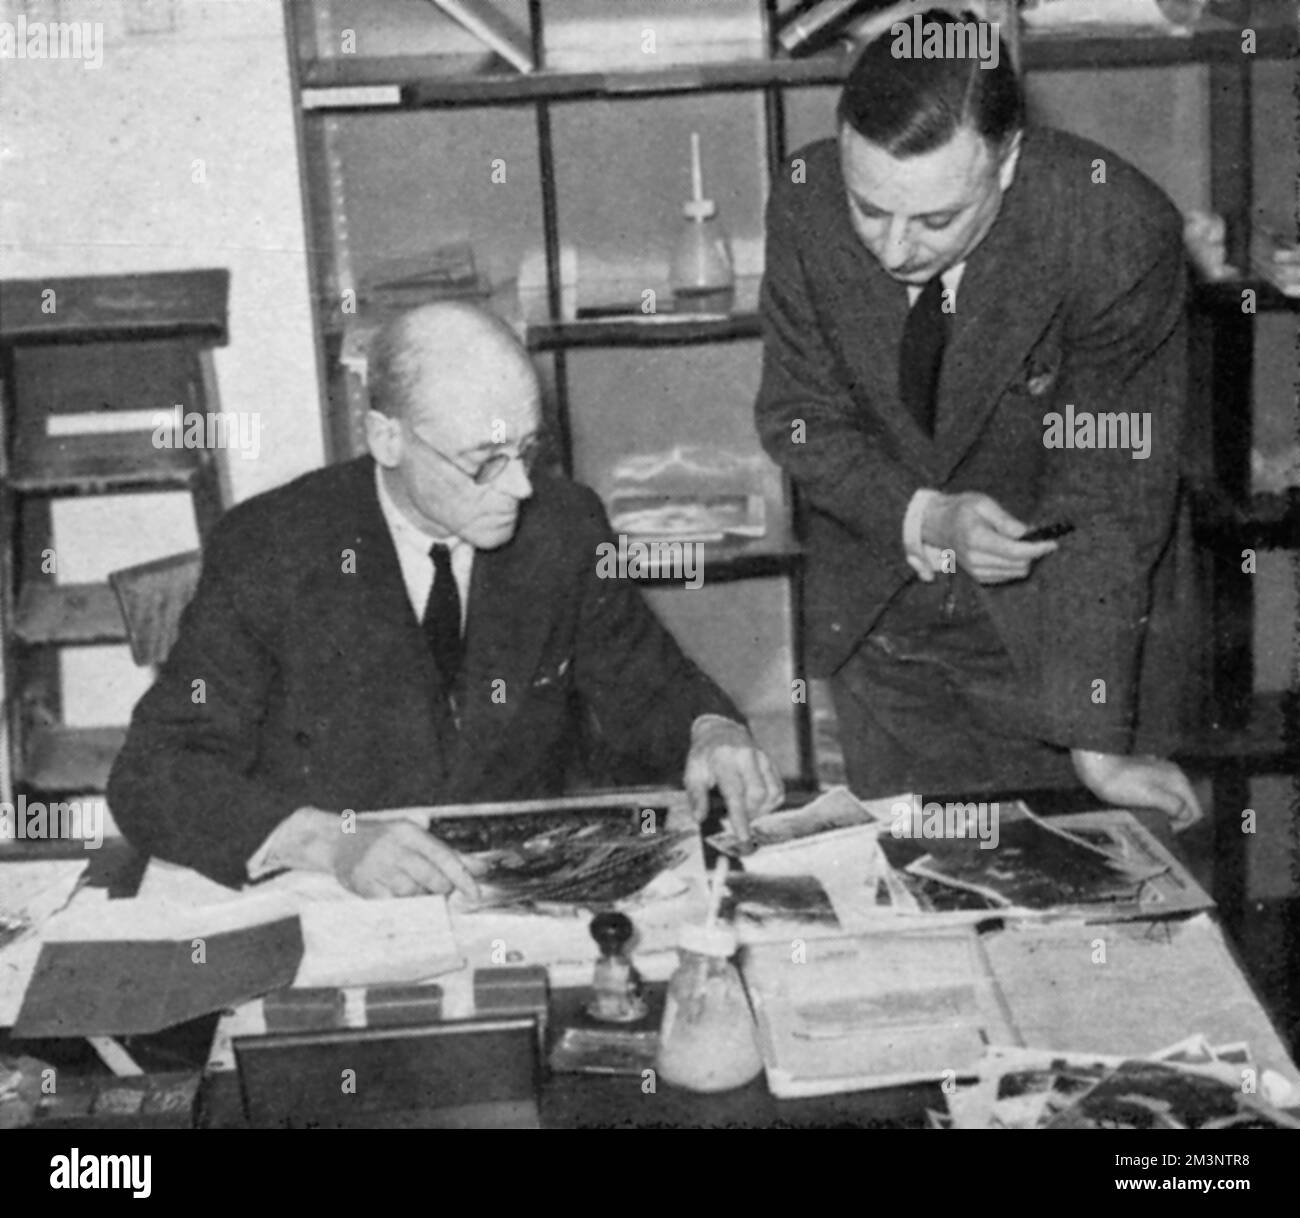 Geschwaderführer Elsdon auf der linken Seite, zensiert Fotos im Senatsgebäude der London University während der ersten Wochen des Zweiten Weltkriegs Datum: 1939 Stockfoto